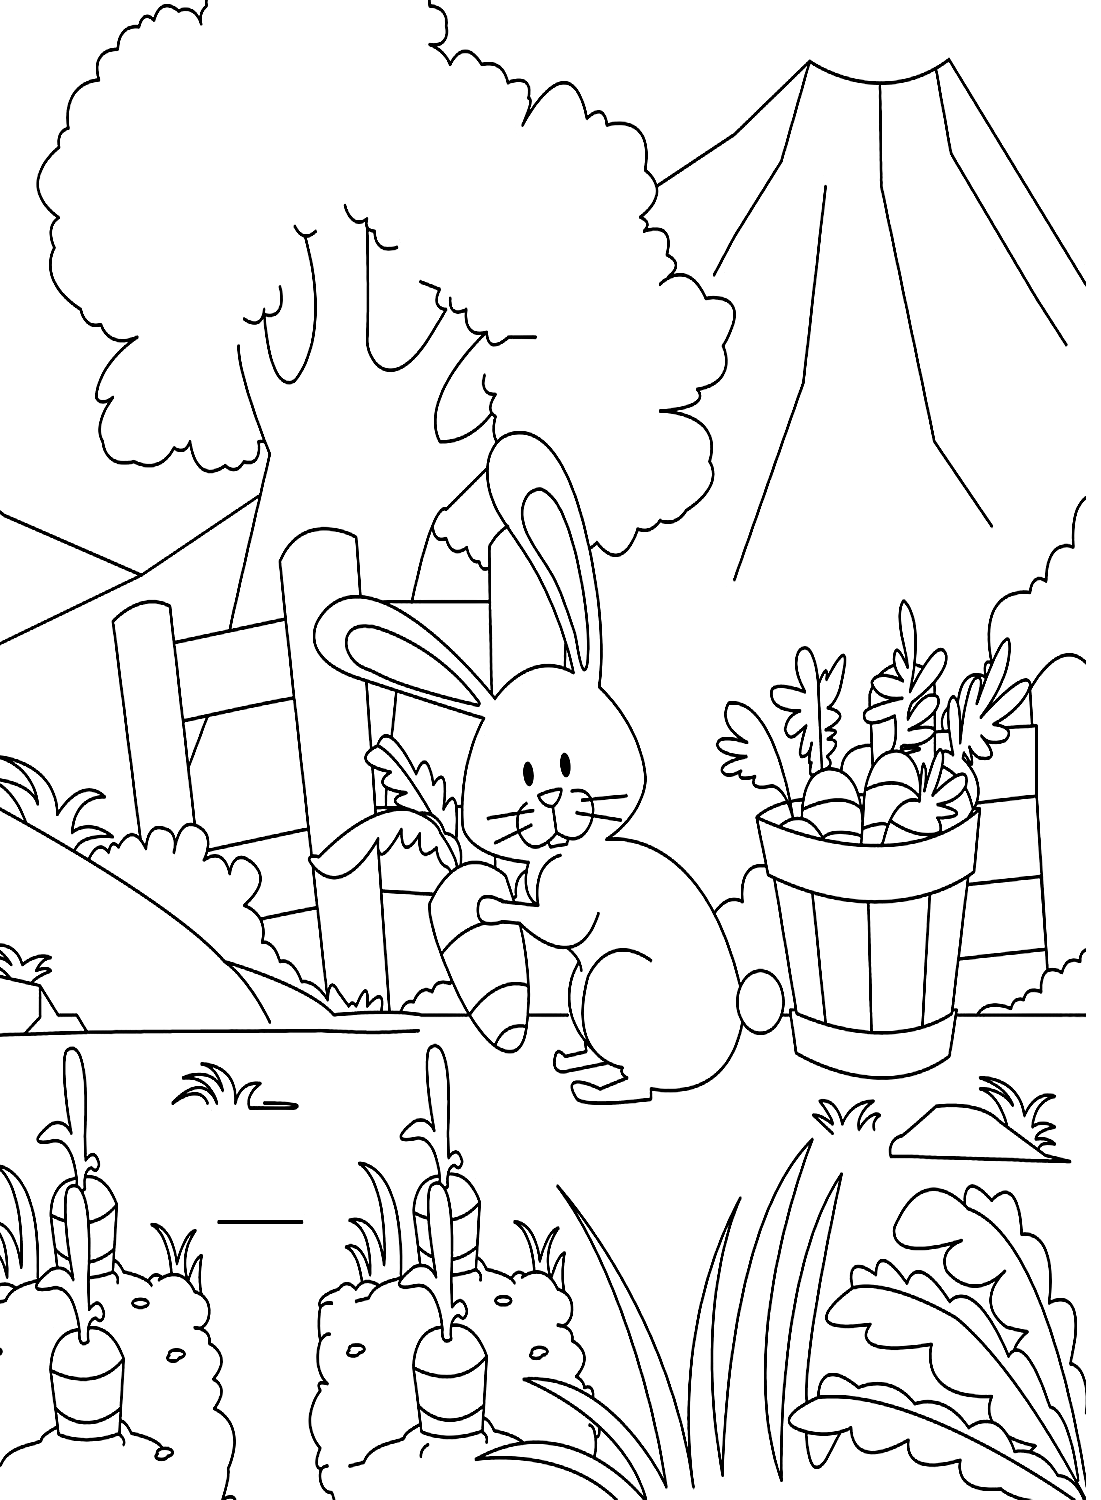 A carrot garden page